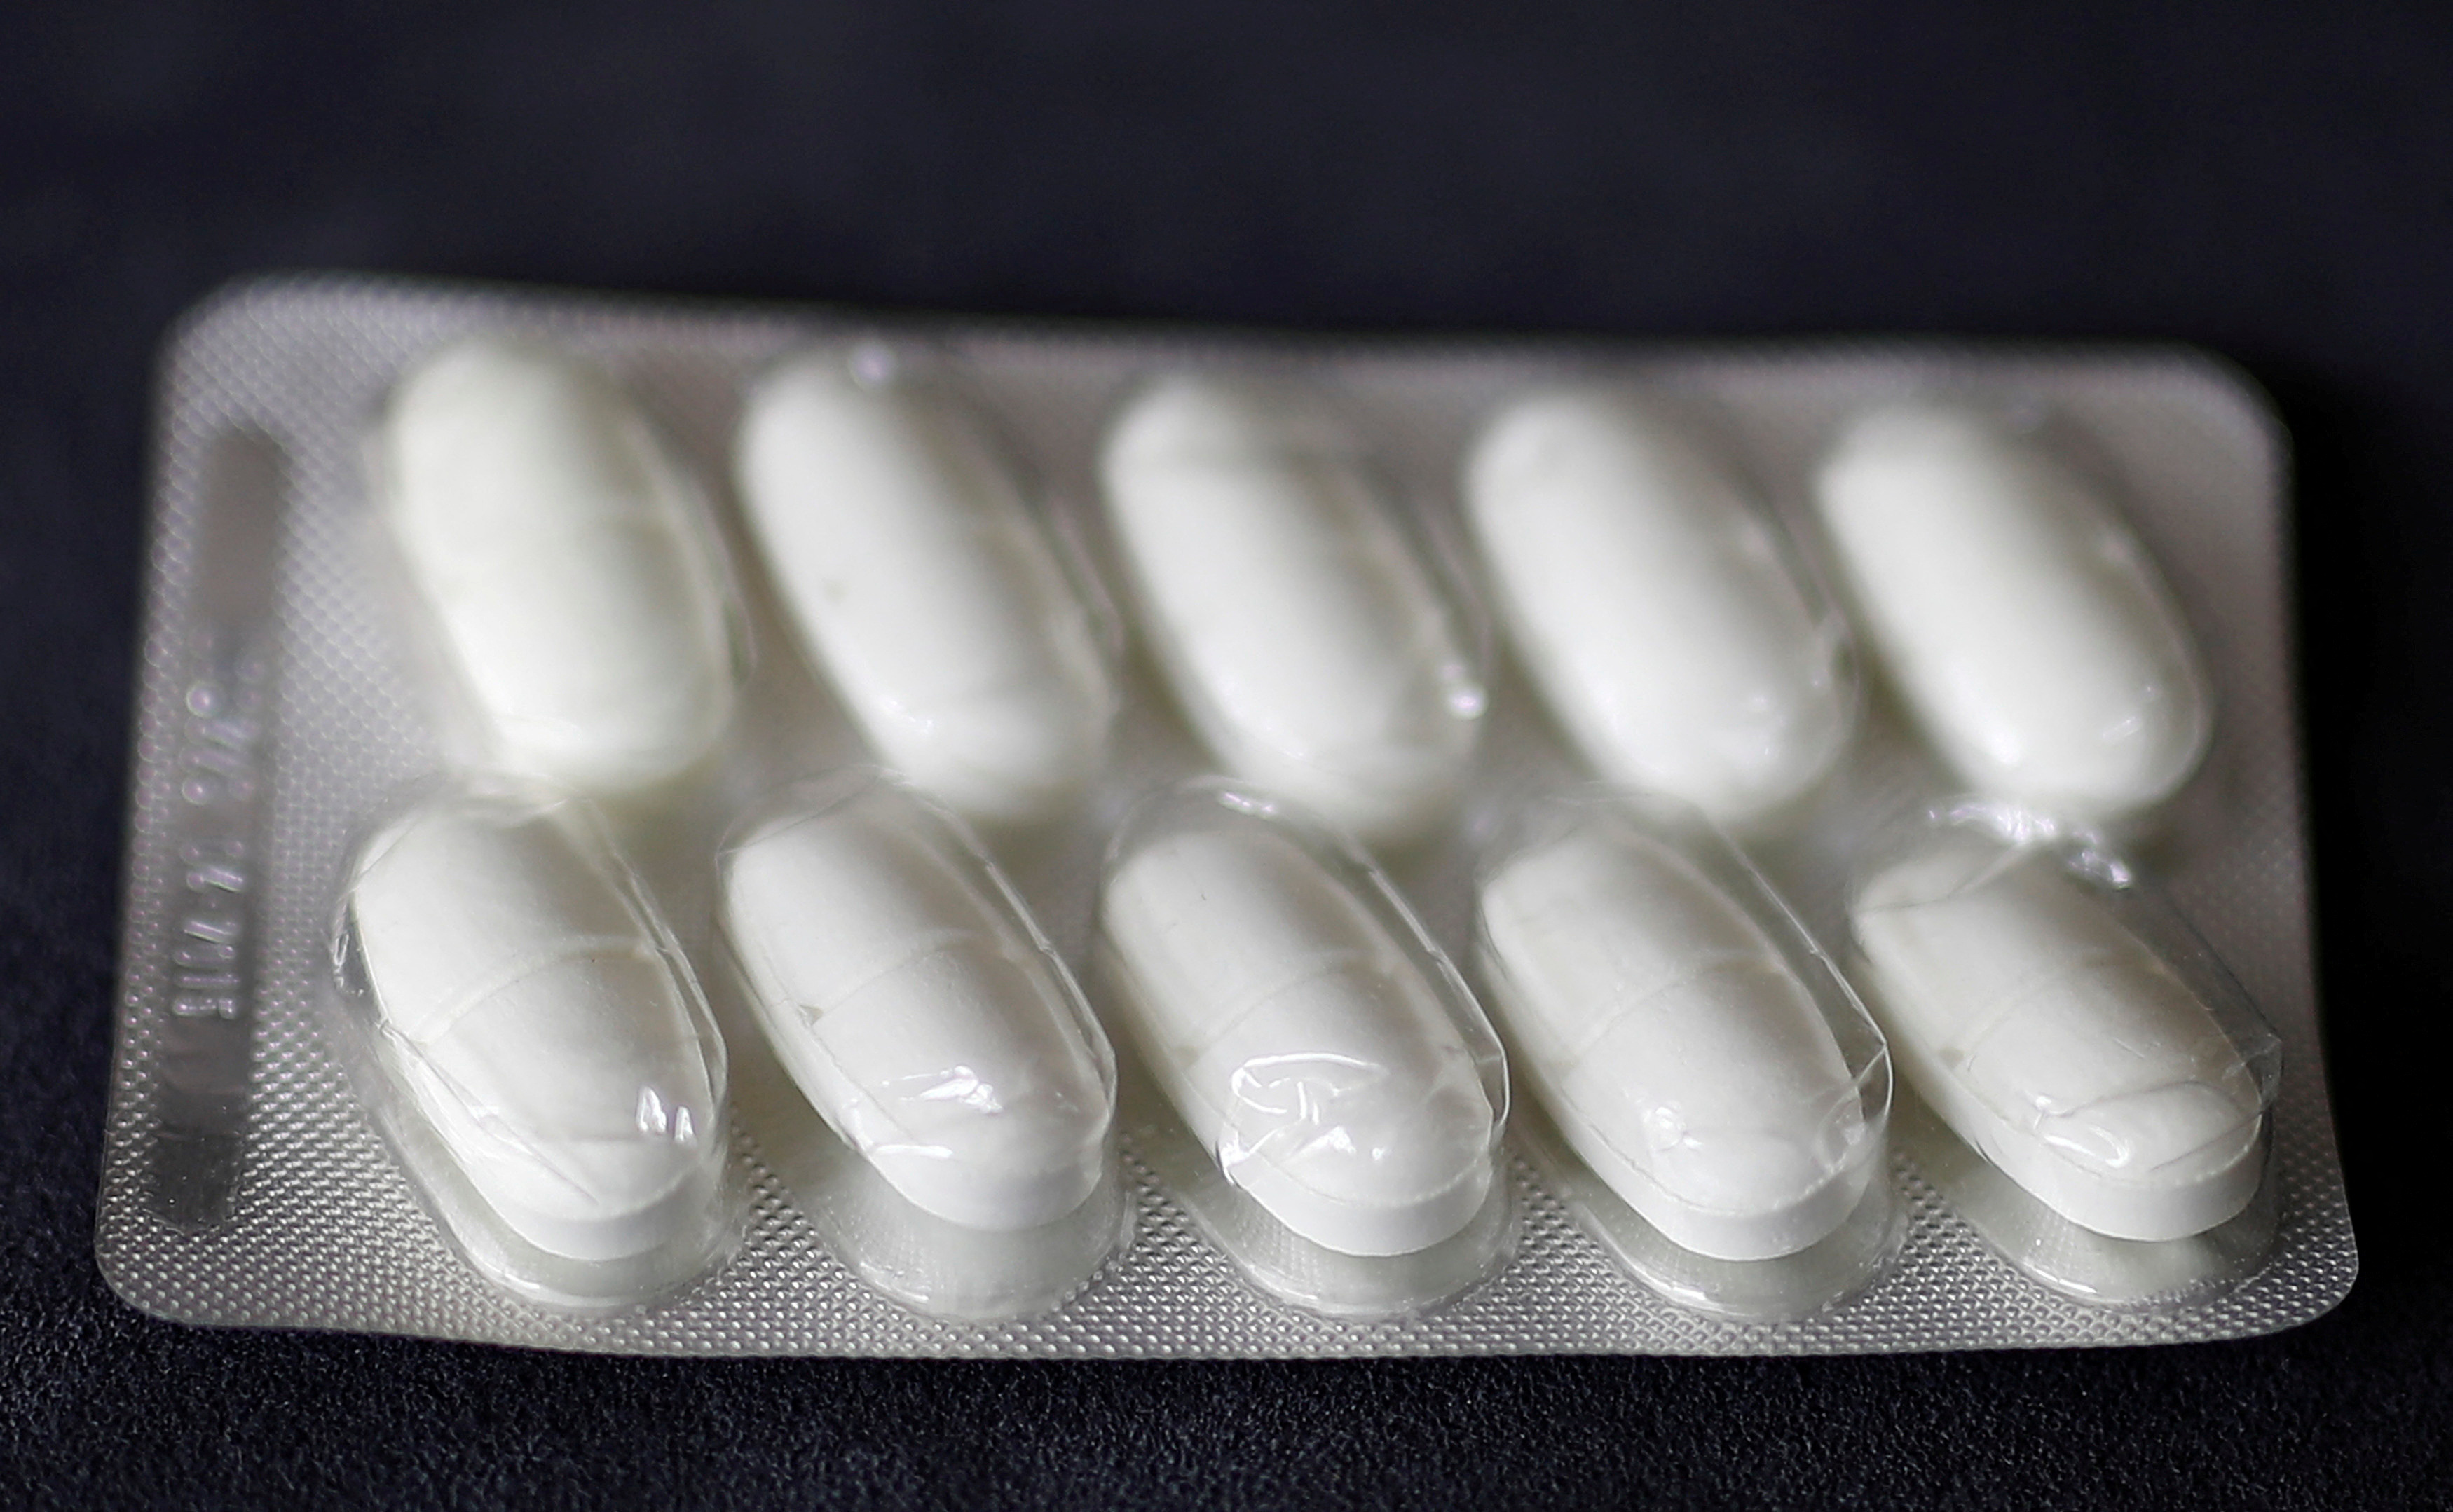 Ten pills of the antibiotic 